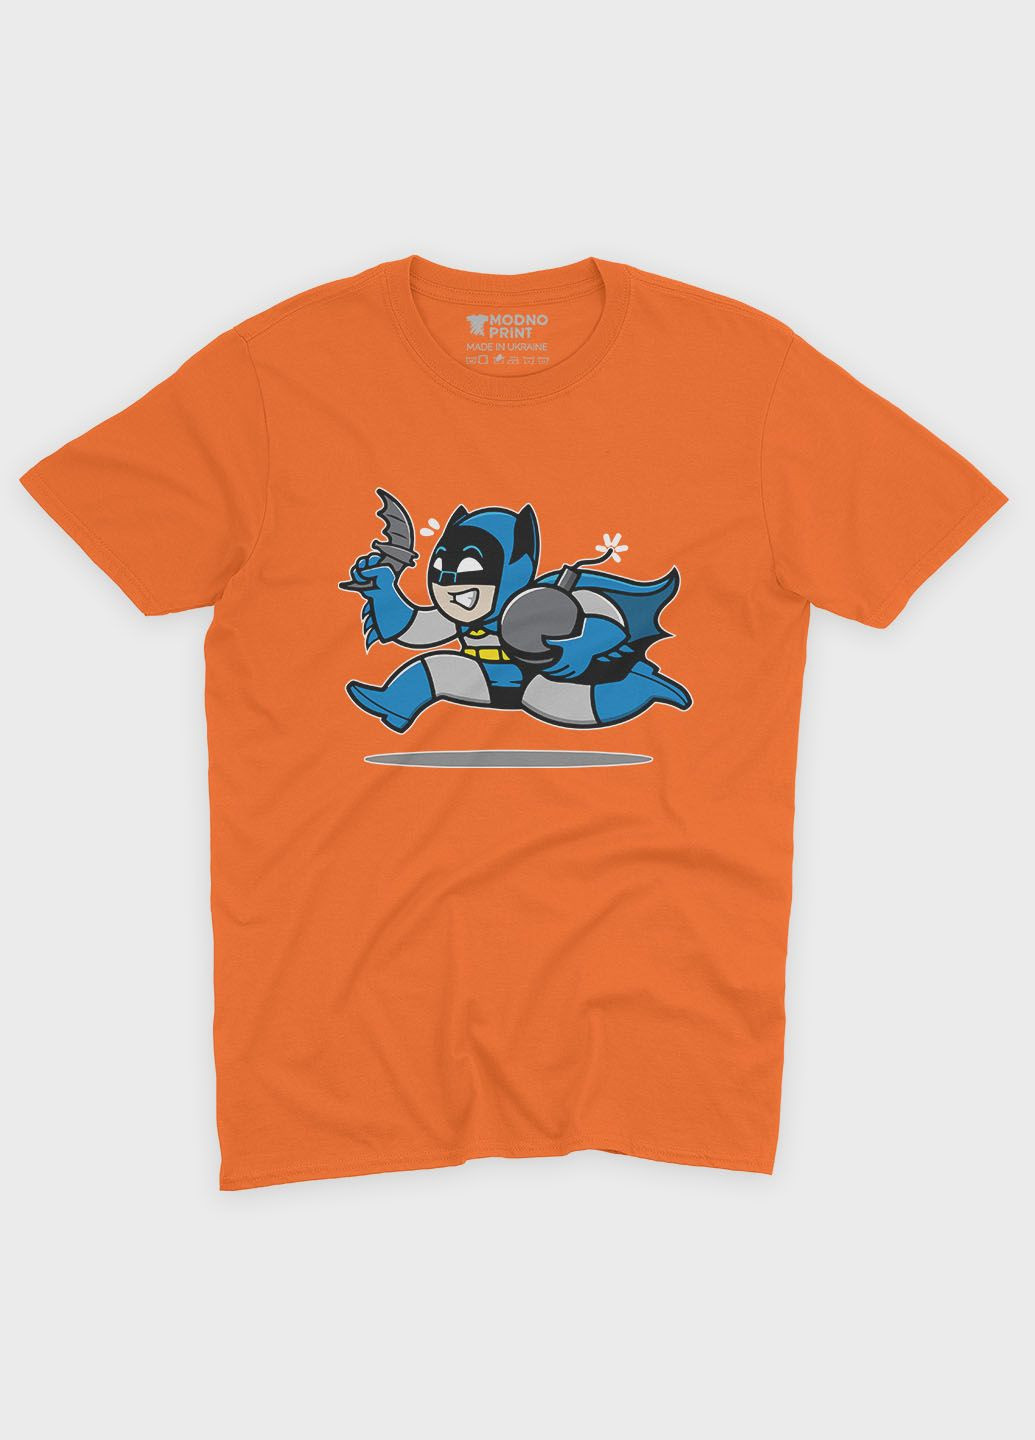 Помаранчева демісезонна футболка для хлопчика з принтом супергероя - бетмен (ts001-1-ora-006-003-033-b) Modno